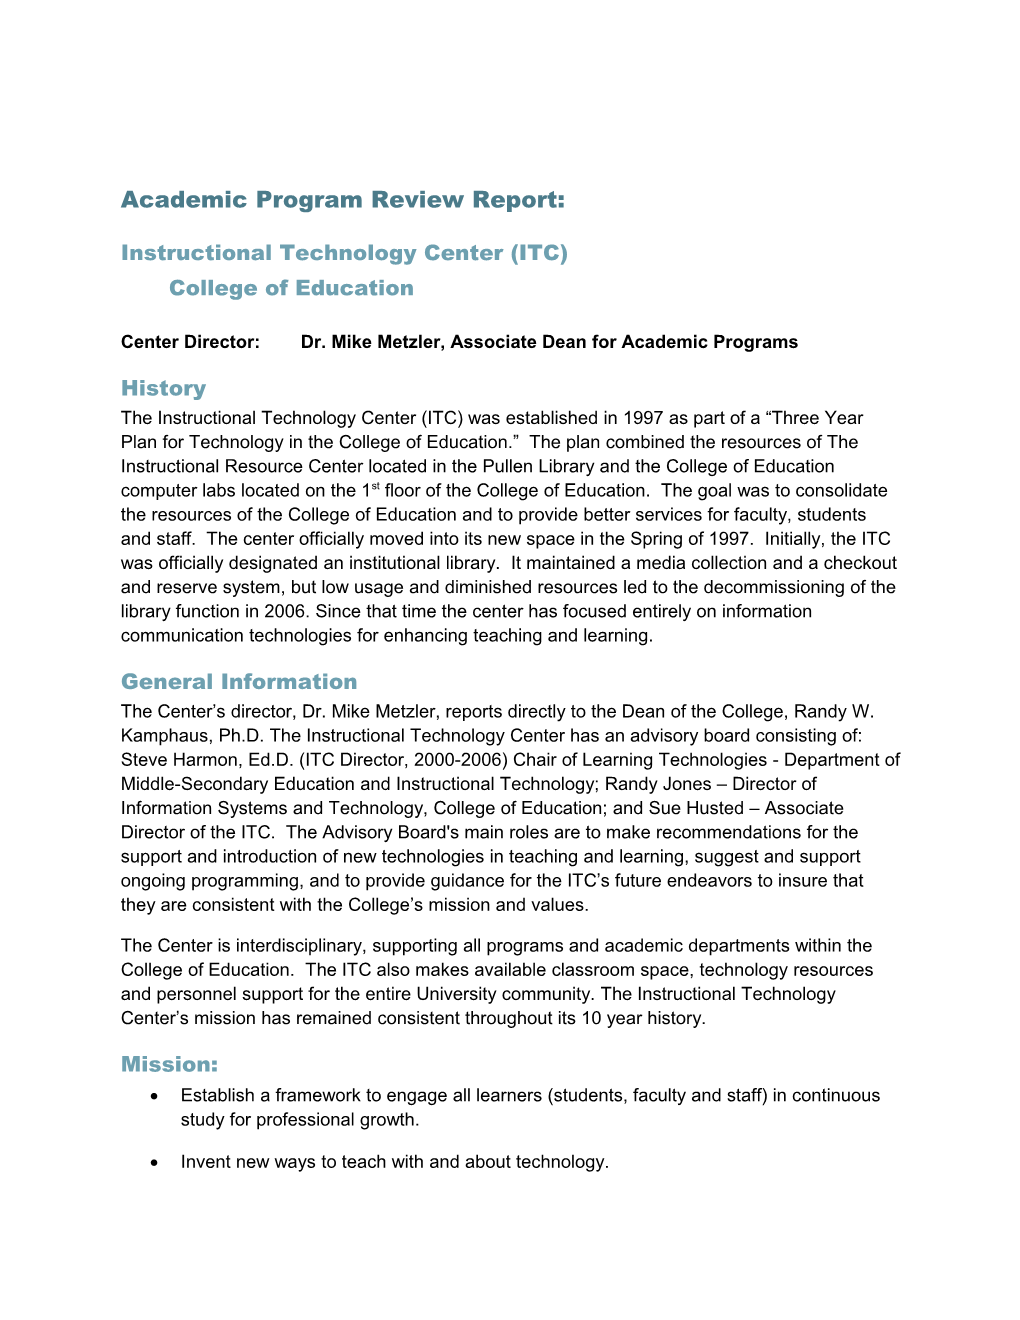 Academic Program Review Report: ITC